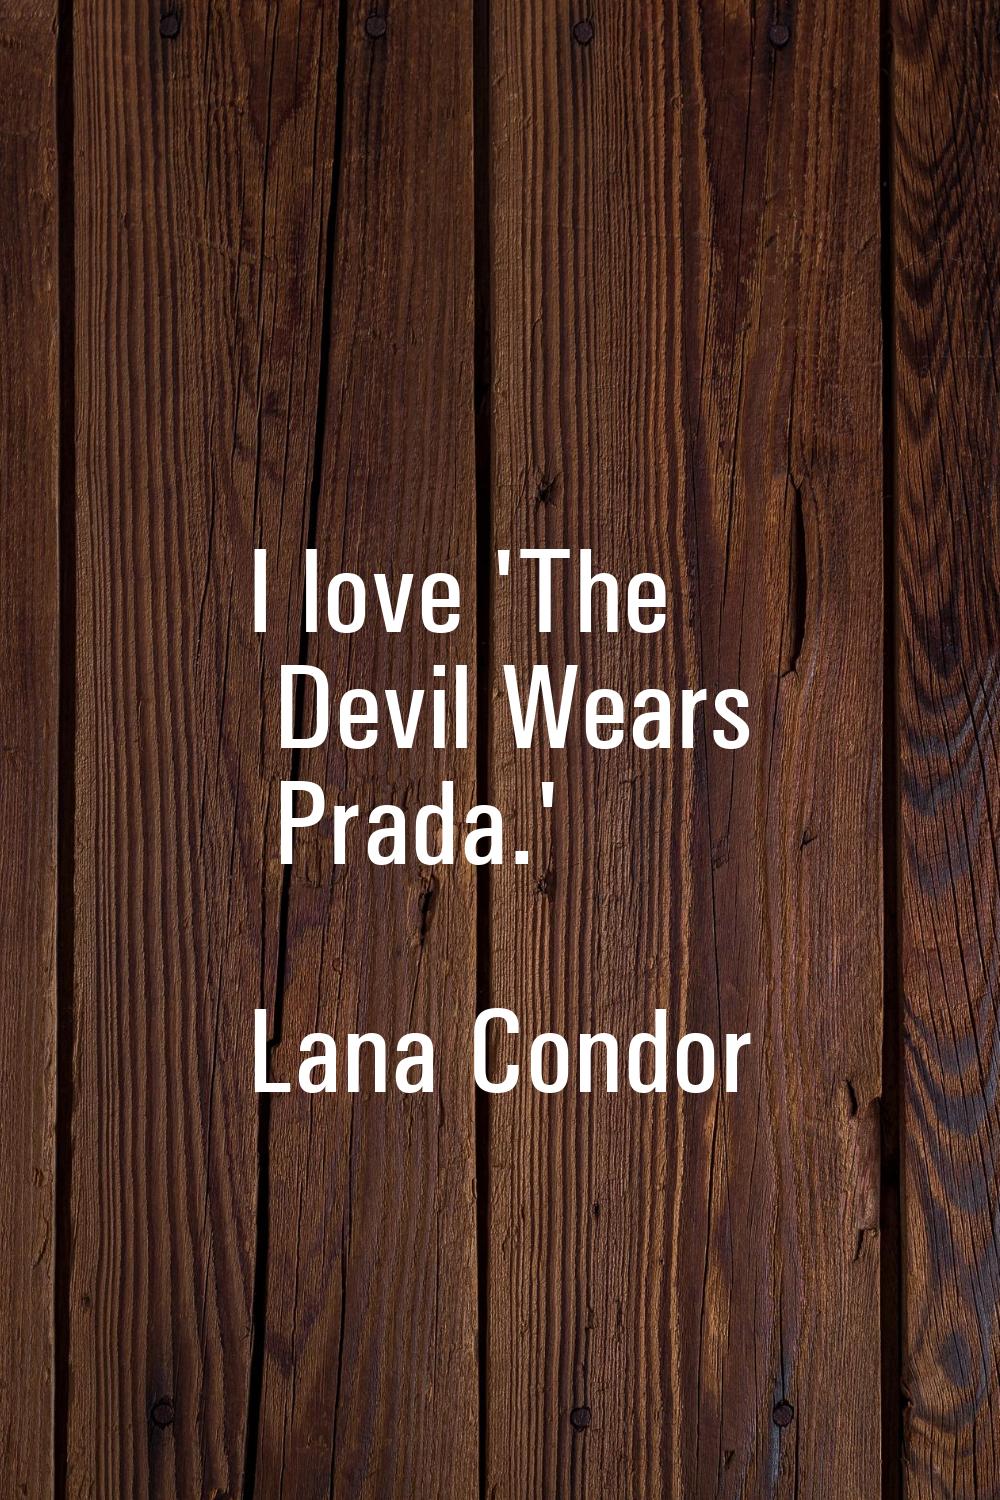 I love 'The Devil Wears Prada.'